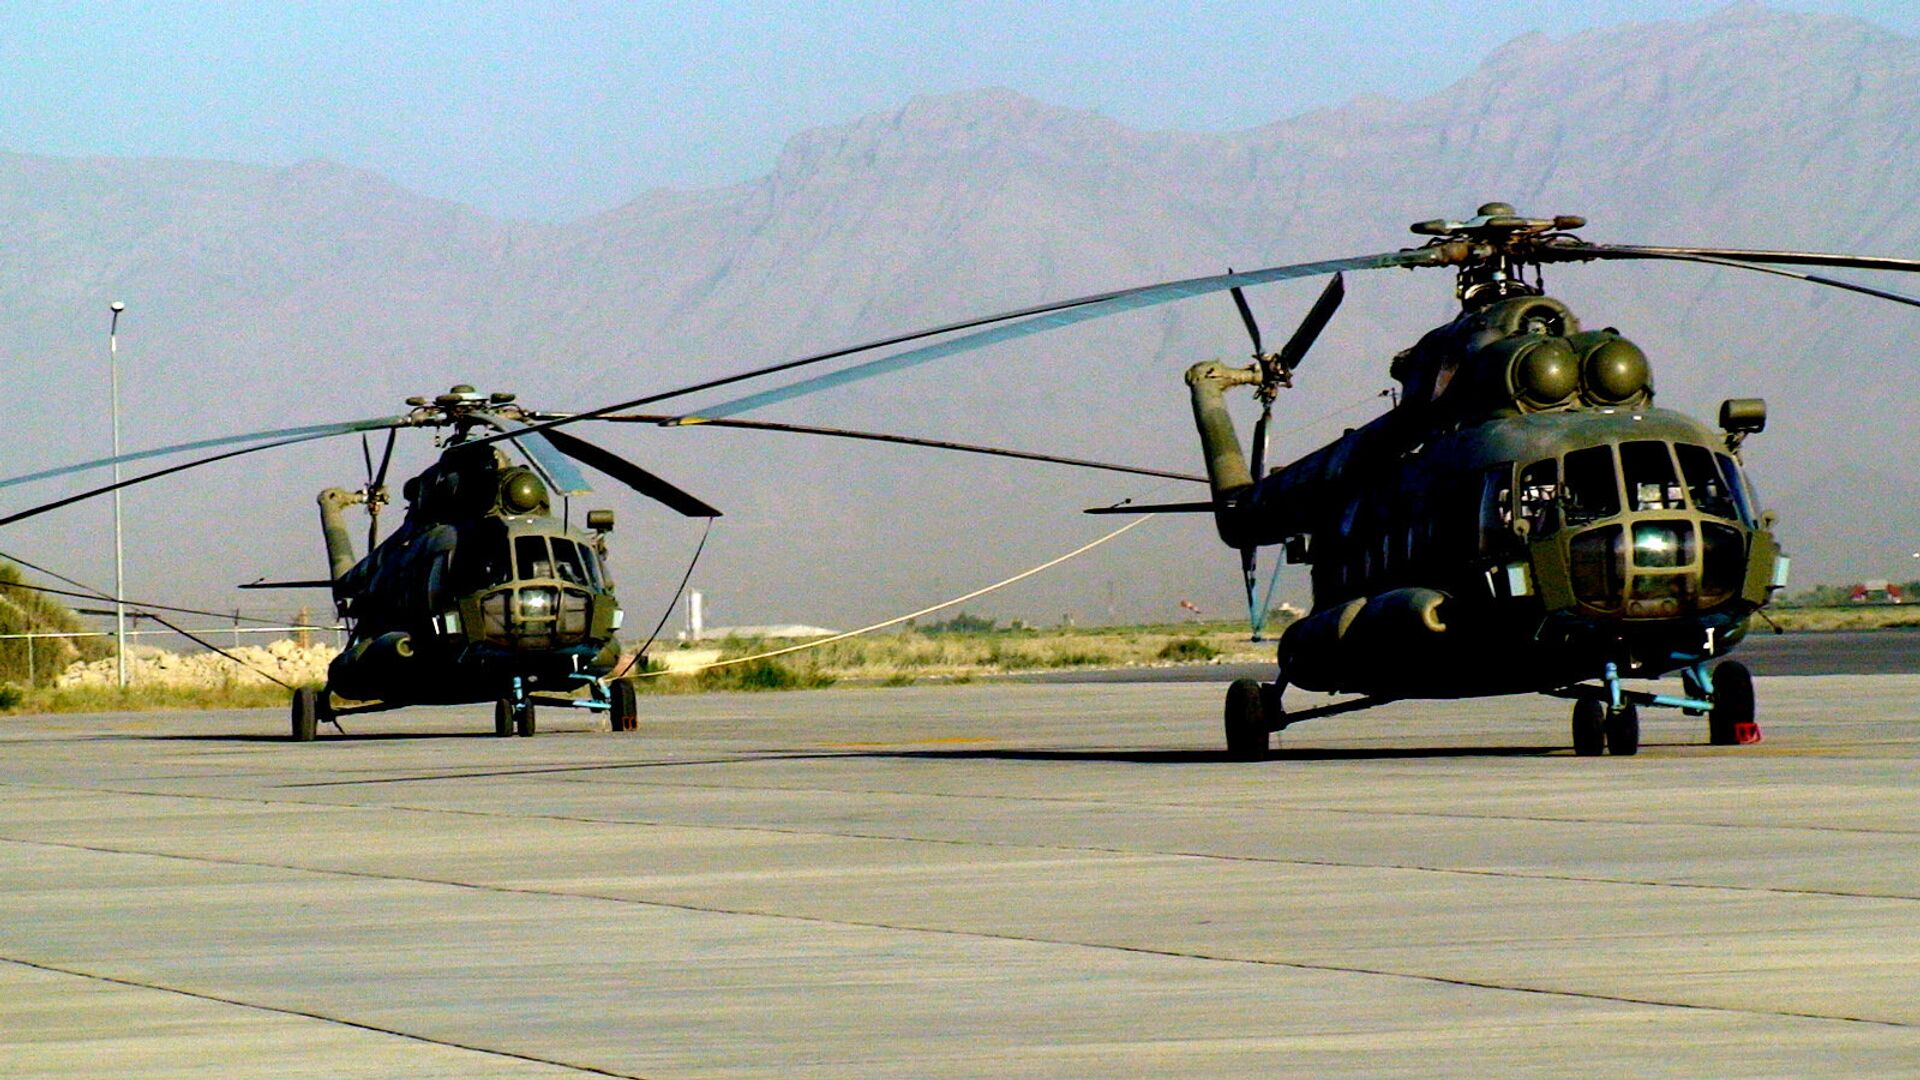 Вертолетный парк ВВС Афганистана, вертолеты Ми-17. Архивное фото - РИА Новости, 1920, 15.10.2019